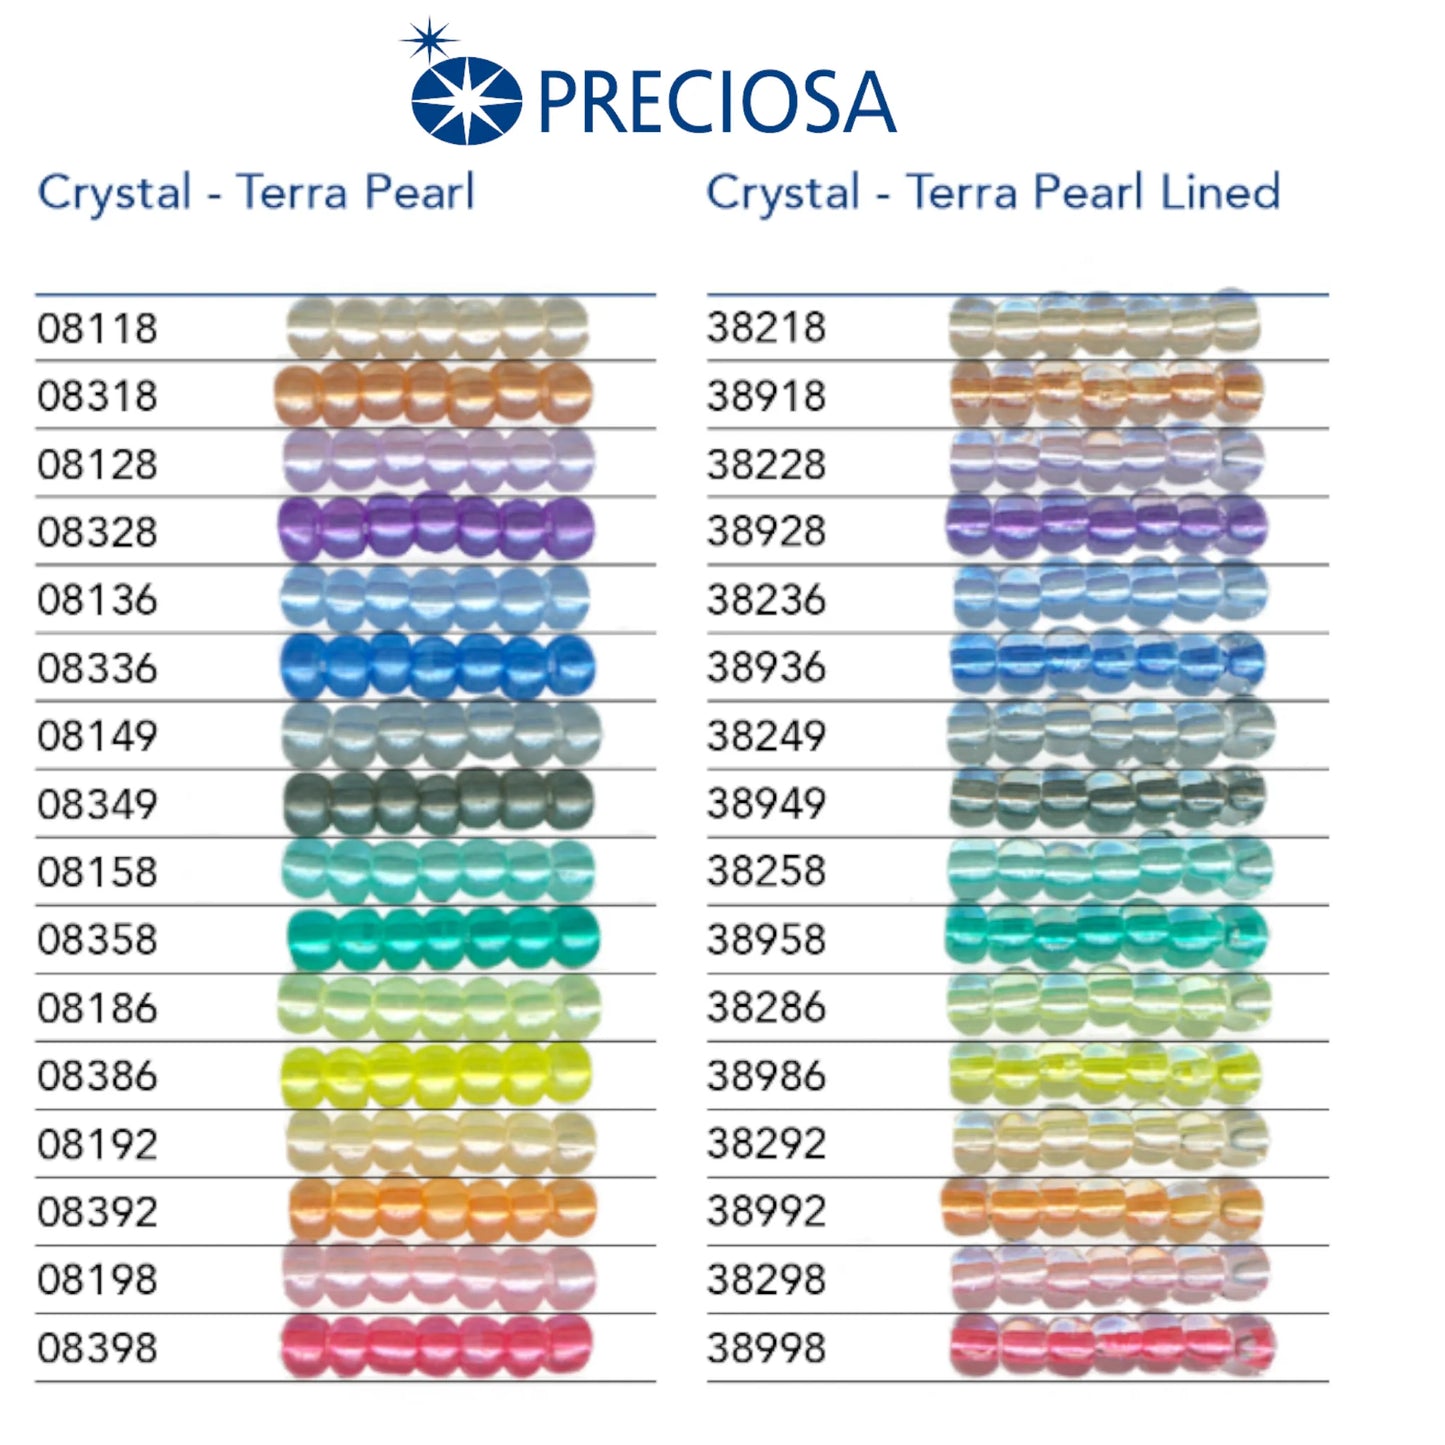 08386 Rocailles tchèques PRECIOSA Rocailles 10/0 jaune. Cristal - Terra Perle.